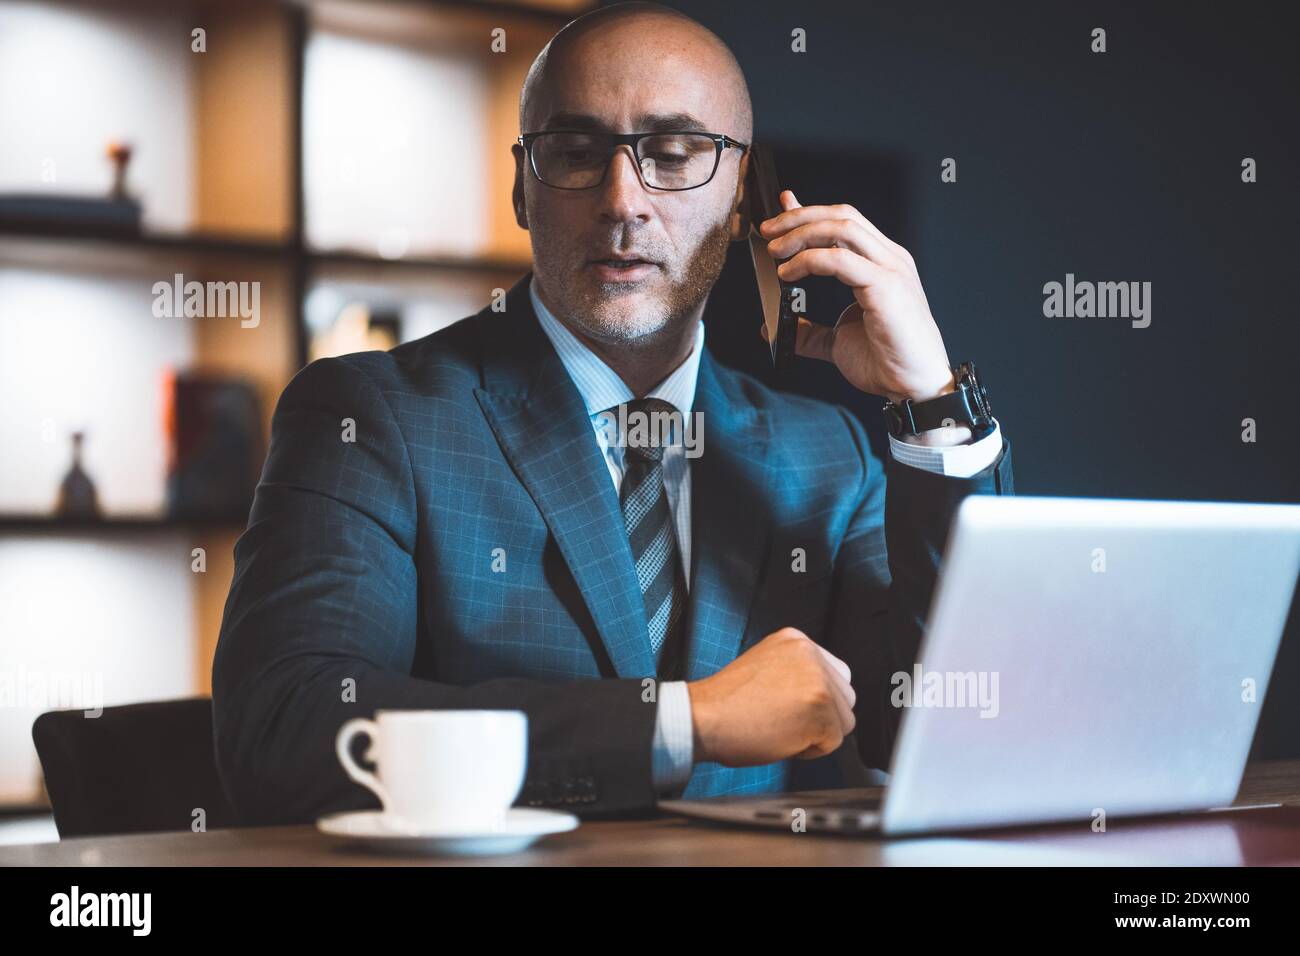 En répondant à un appel téléphonique, un homme d'affaires a pris une pause au travail et regarde une tasse de café près d'un ordinateur portable. Beau homme audacieux travaillant sur un ordinateur portable Banque D'Images